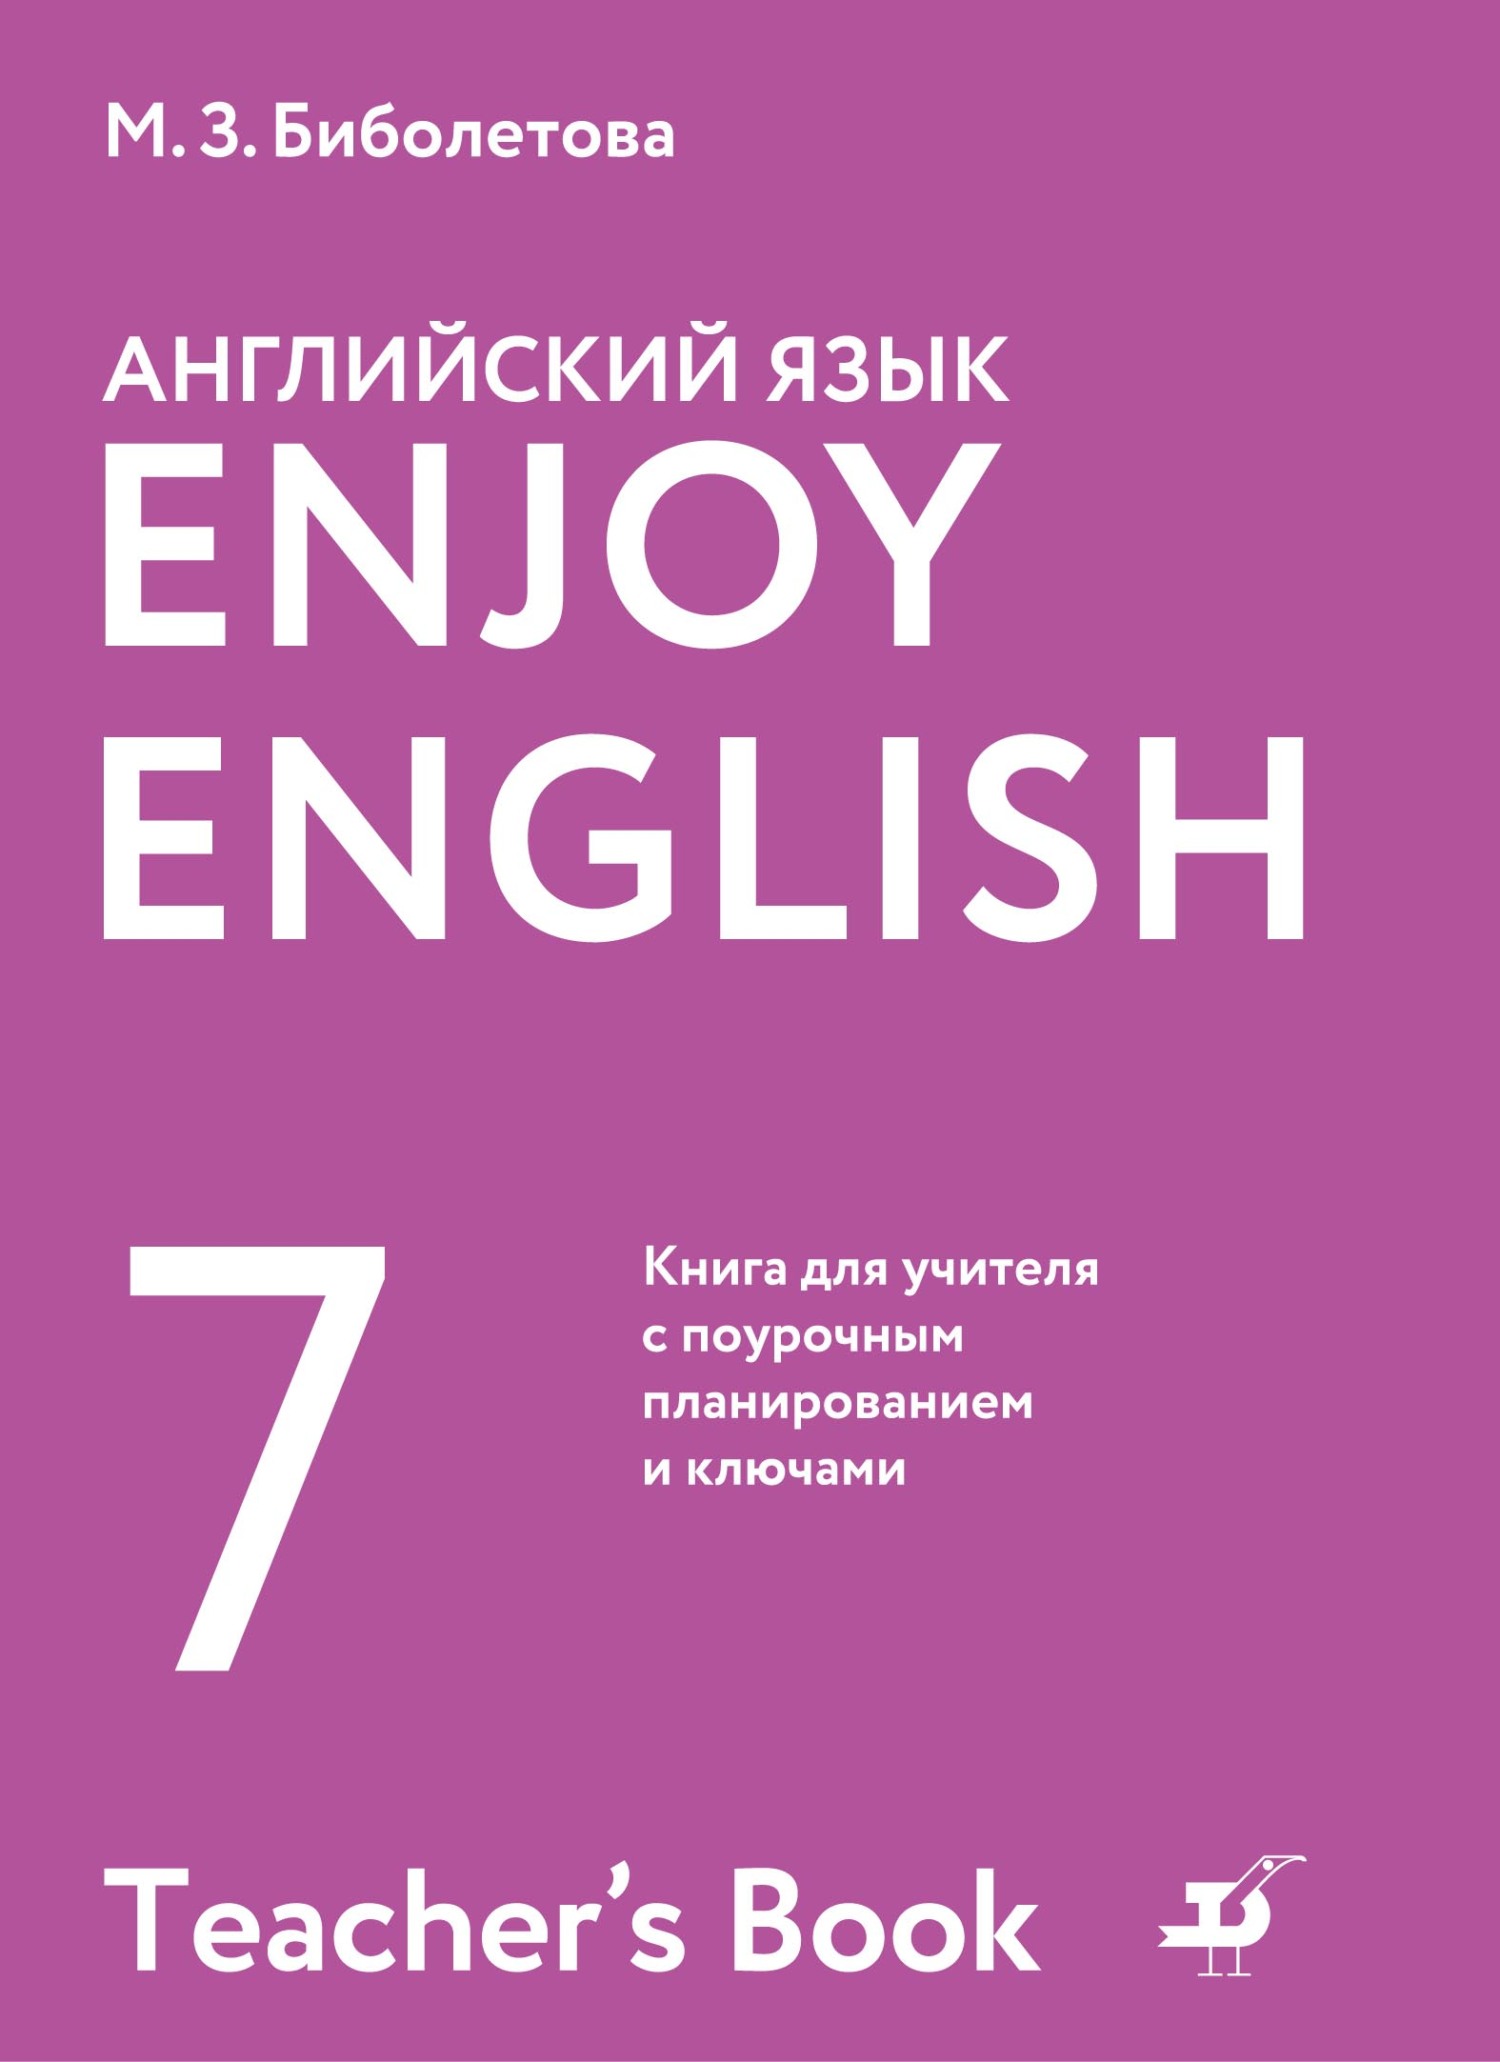 ГДЗ по Английскому языку 7 класс Биболетова Enjoy English